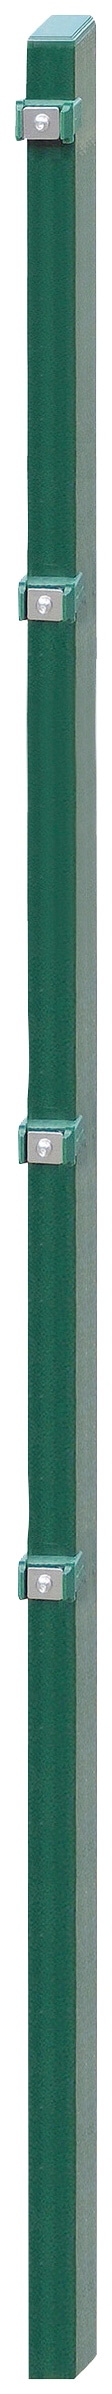 Zaunpfosten »EXCLUSIVE 160«, 6x4x220 cm für Mattenhöhe 160 cm, zum Einbetonieren